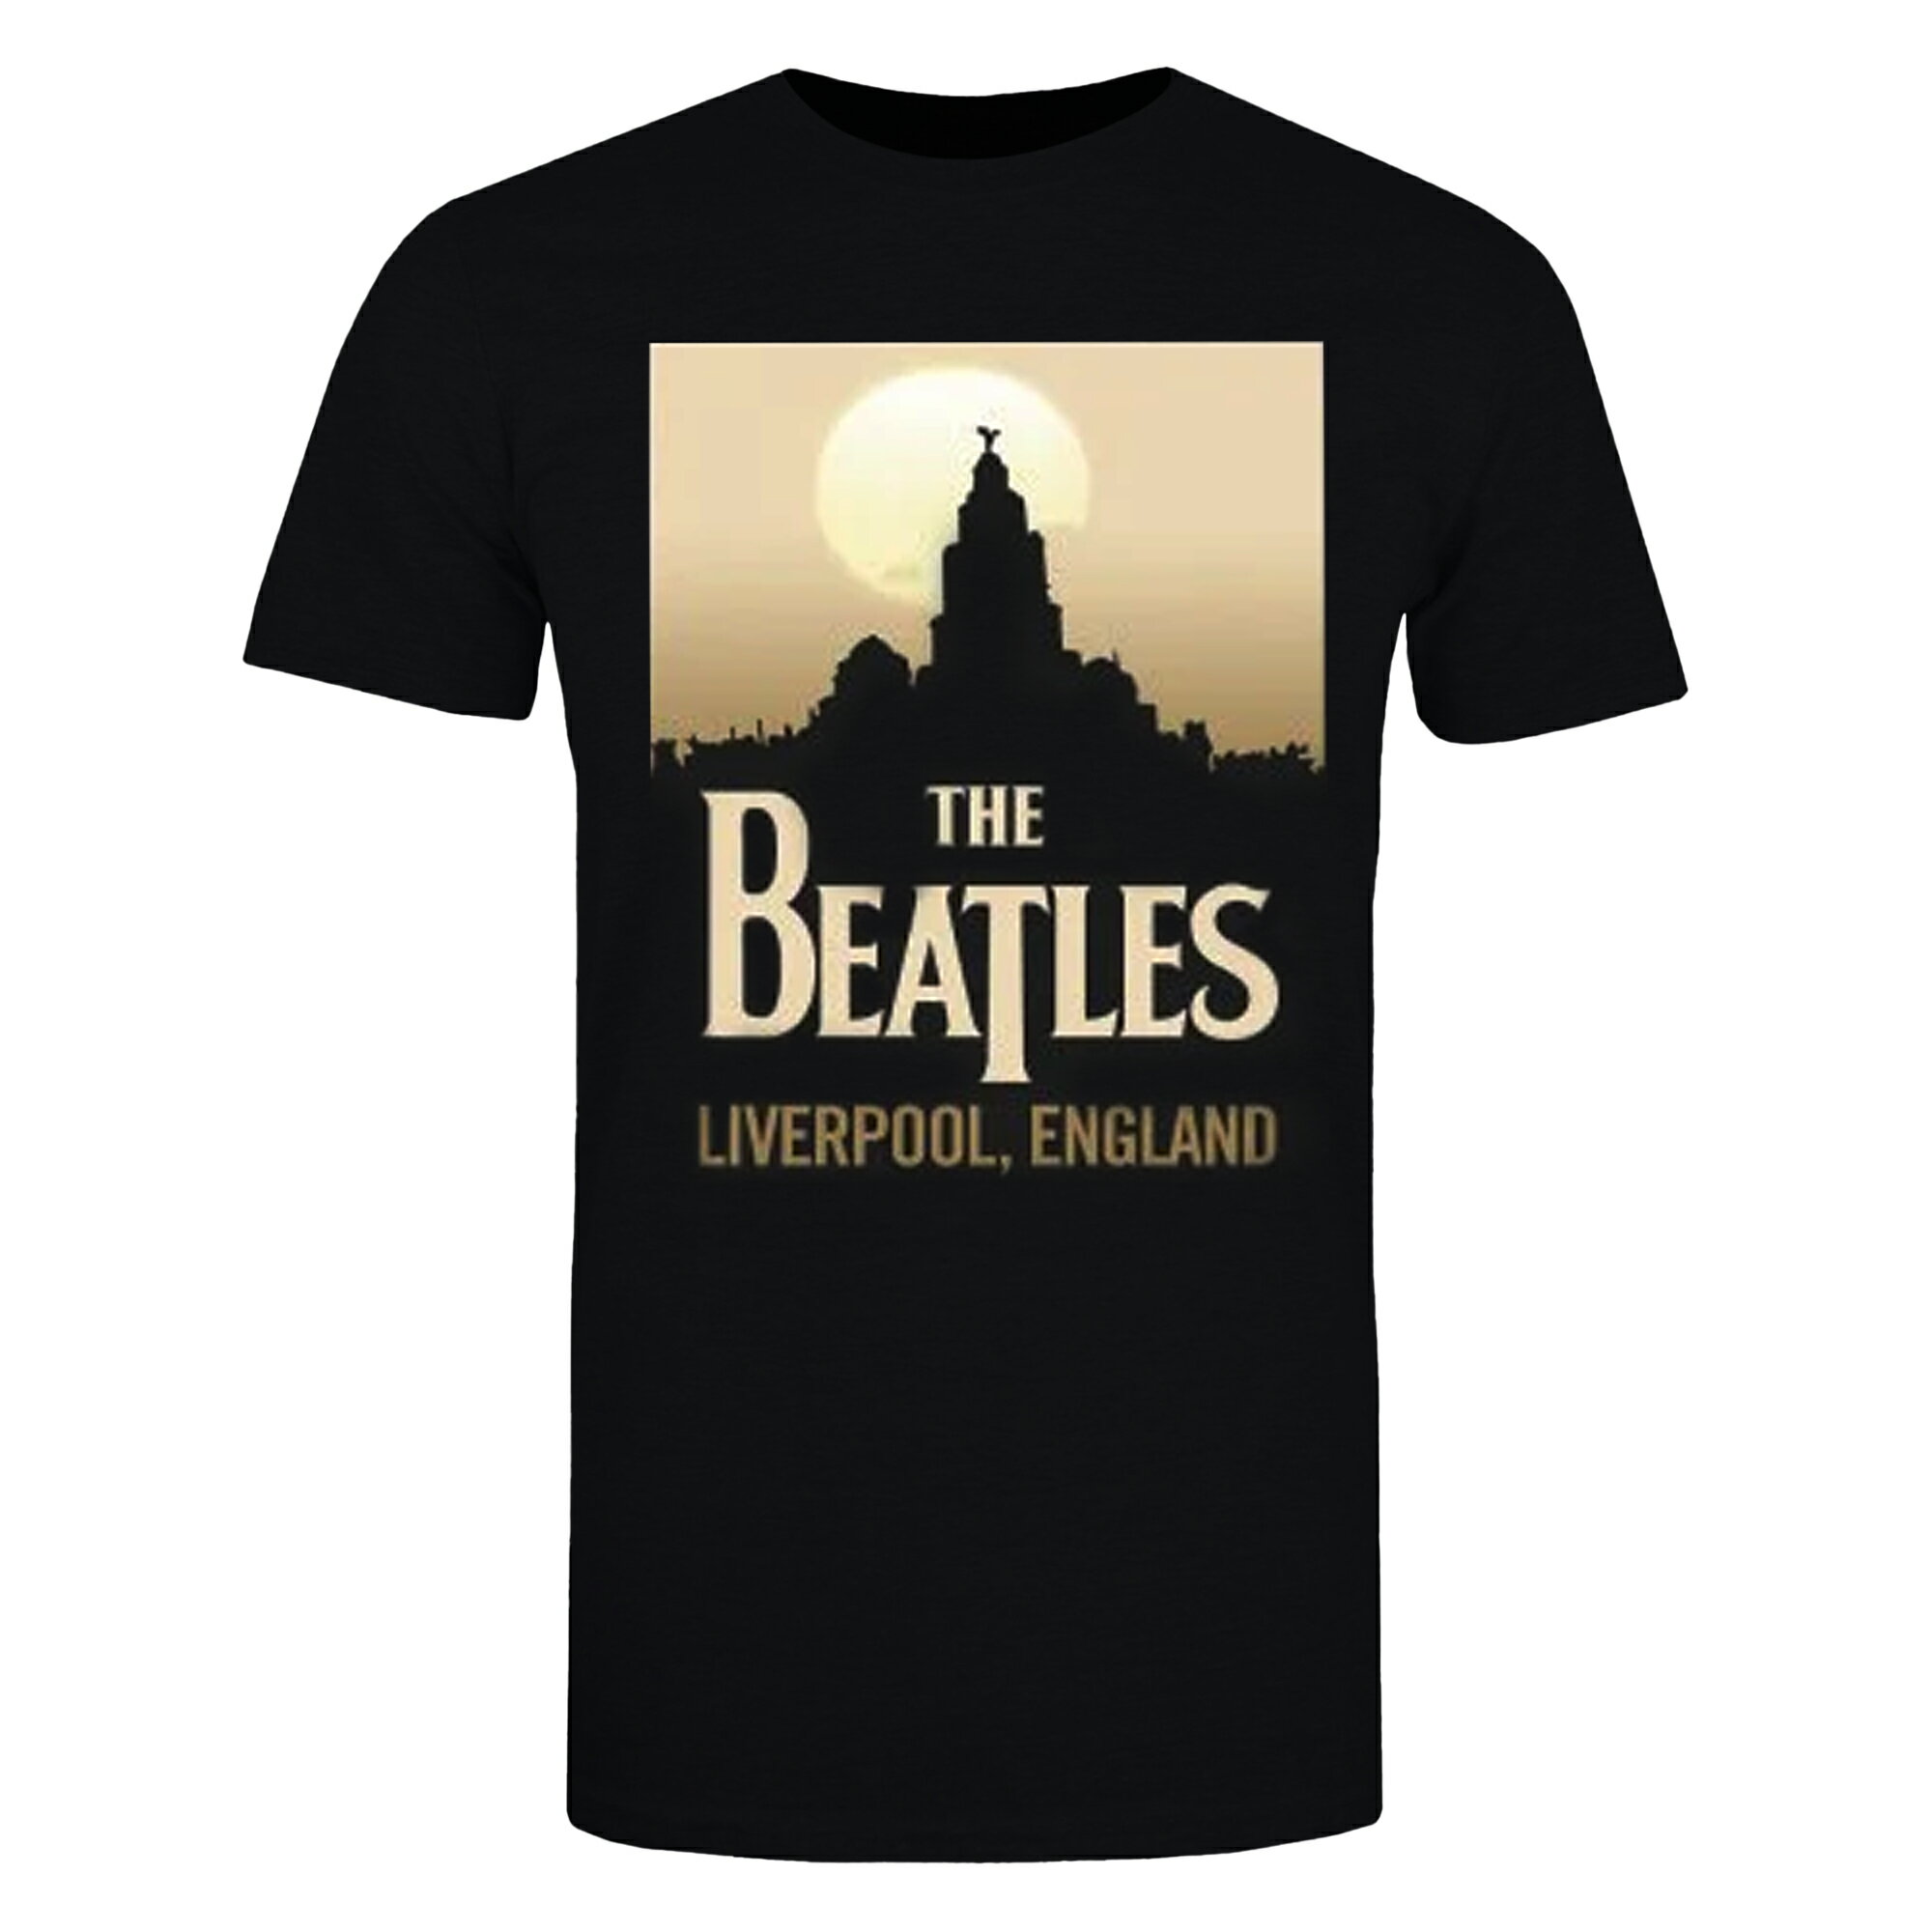 (ビートルズ) The Beatles オフィシャル商品 レディース Liverpool. England Tシャツ 半袖 トップス 【海外通販】